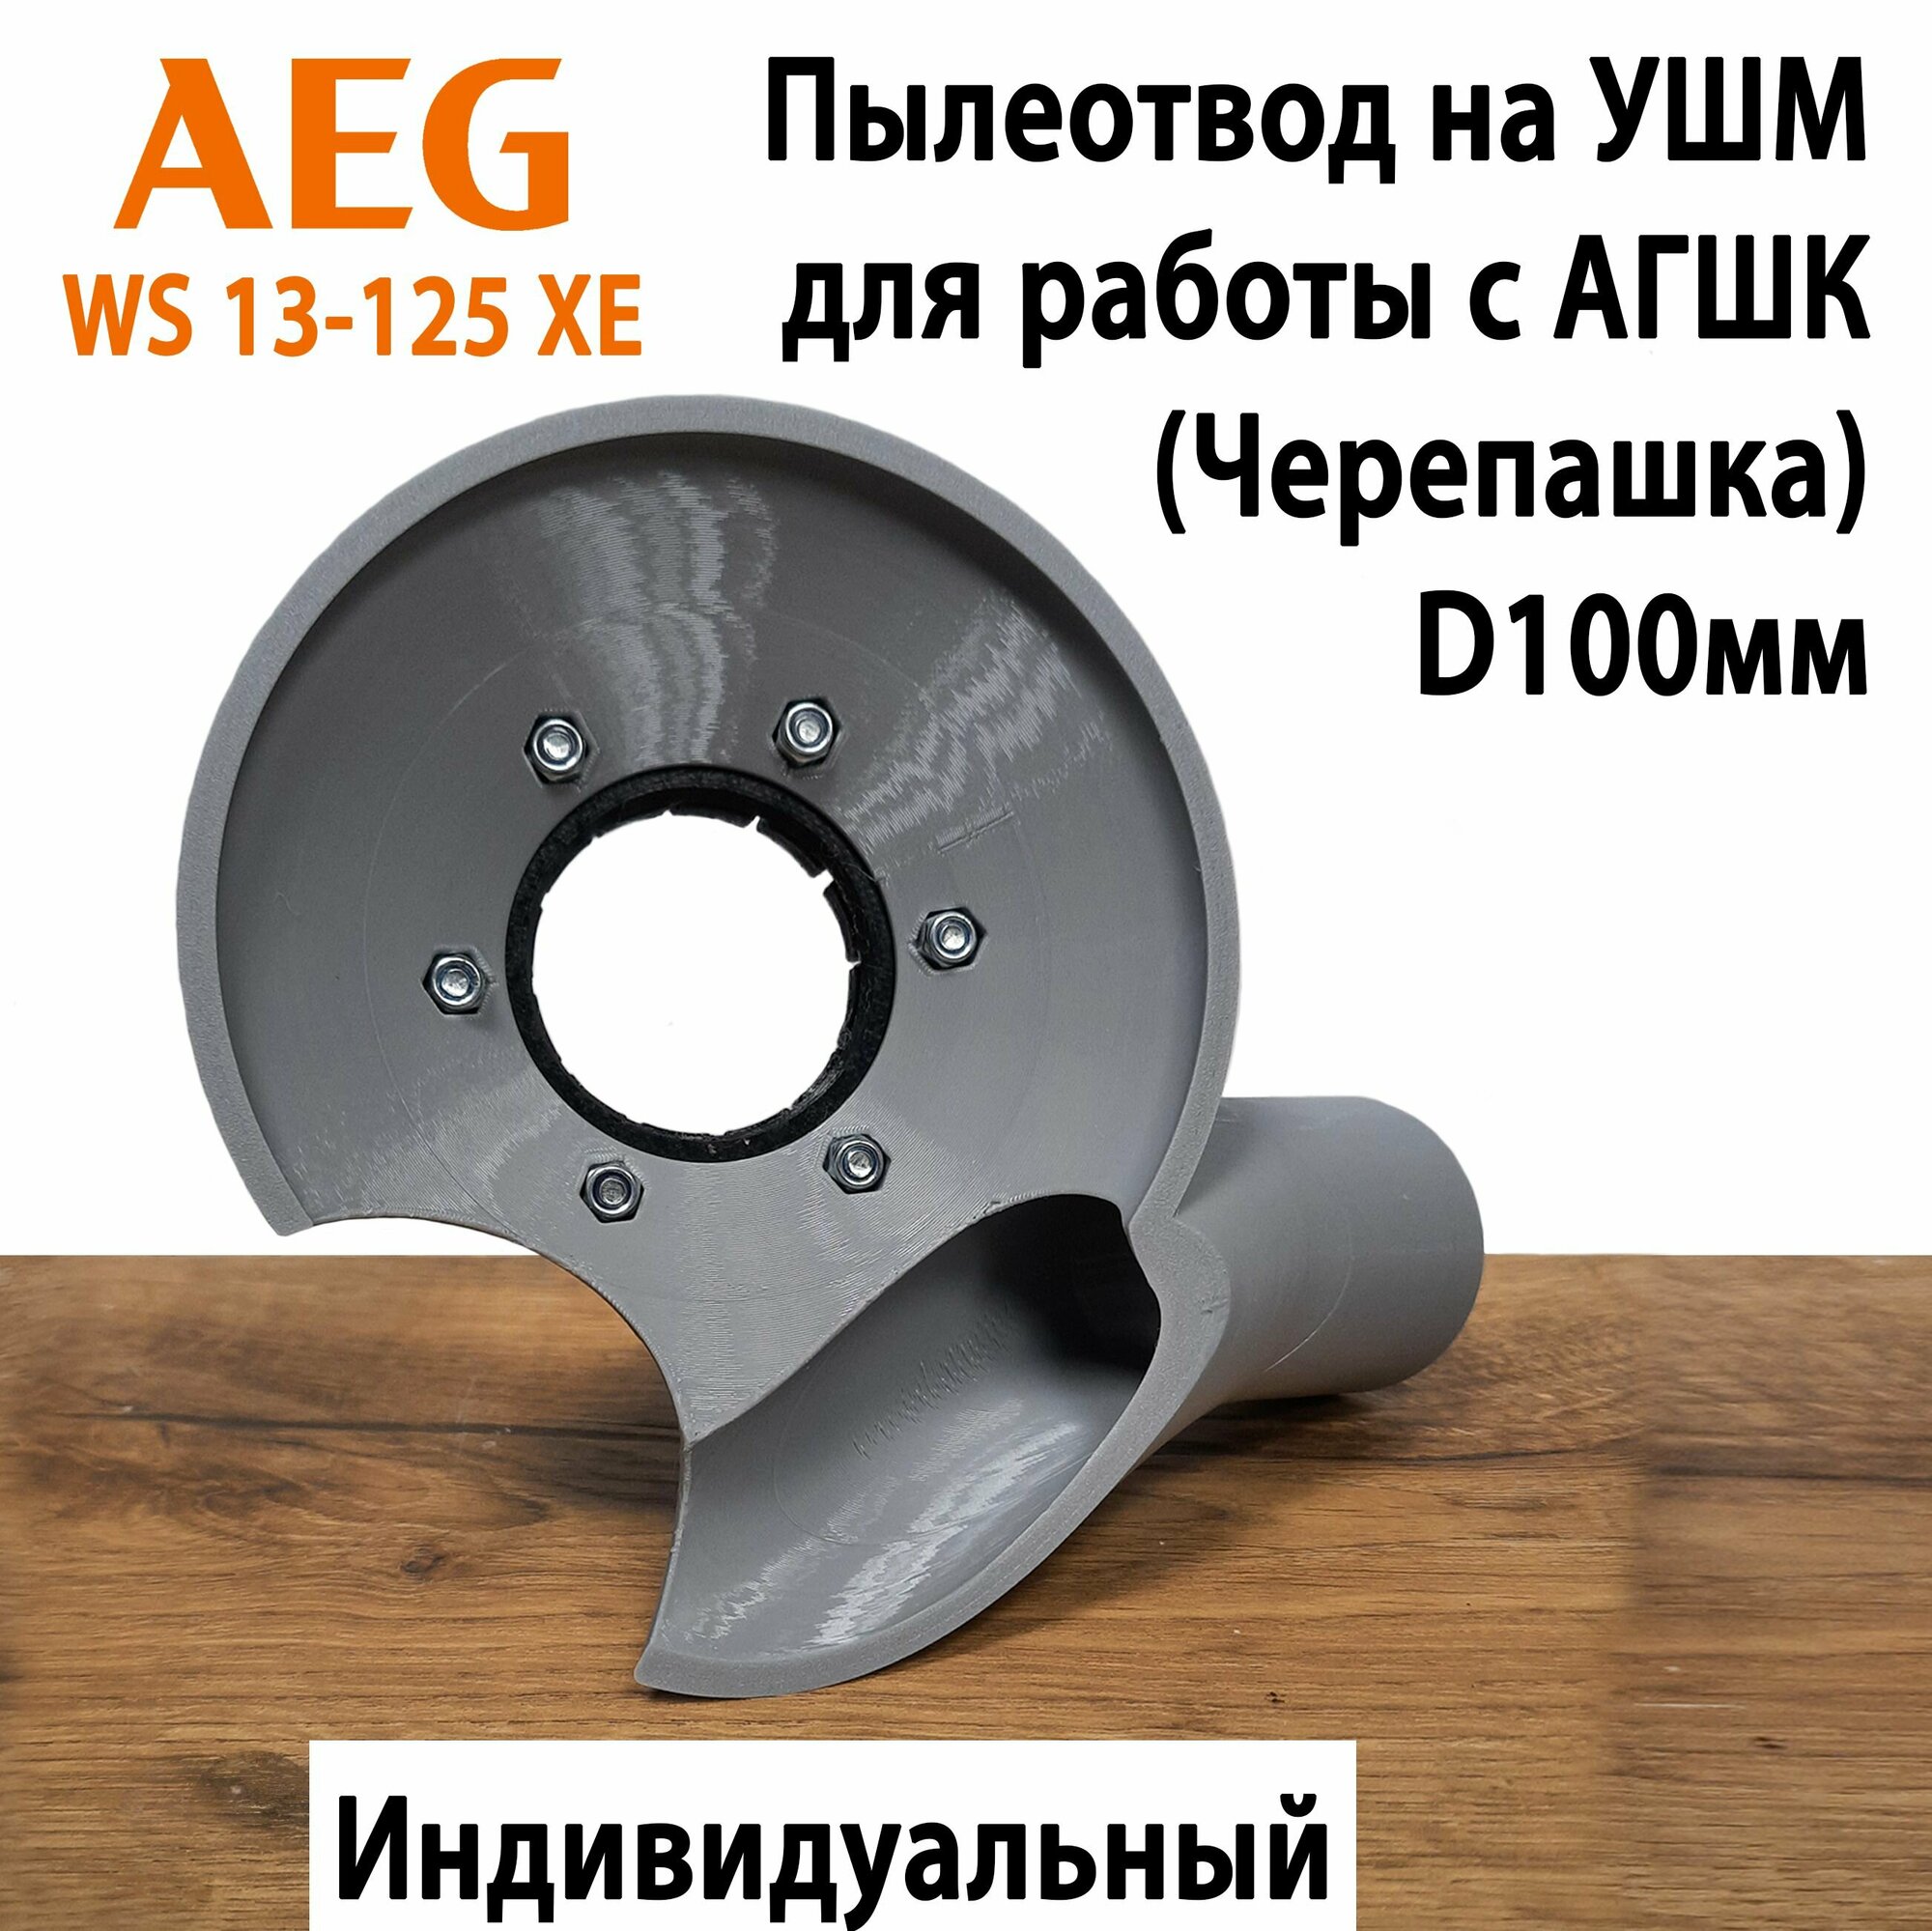 Пылеотвод на УШМ AEG WS 13-125 XE для работы с АГШК 100мм